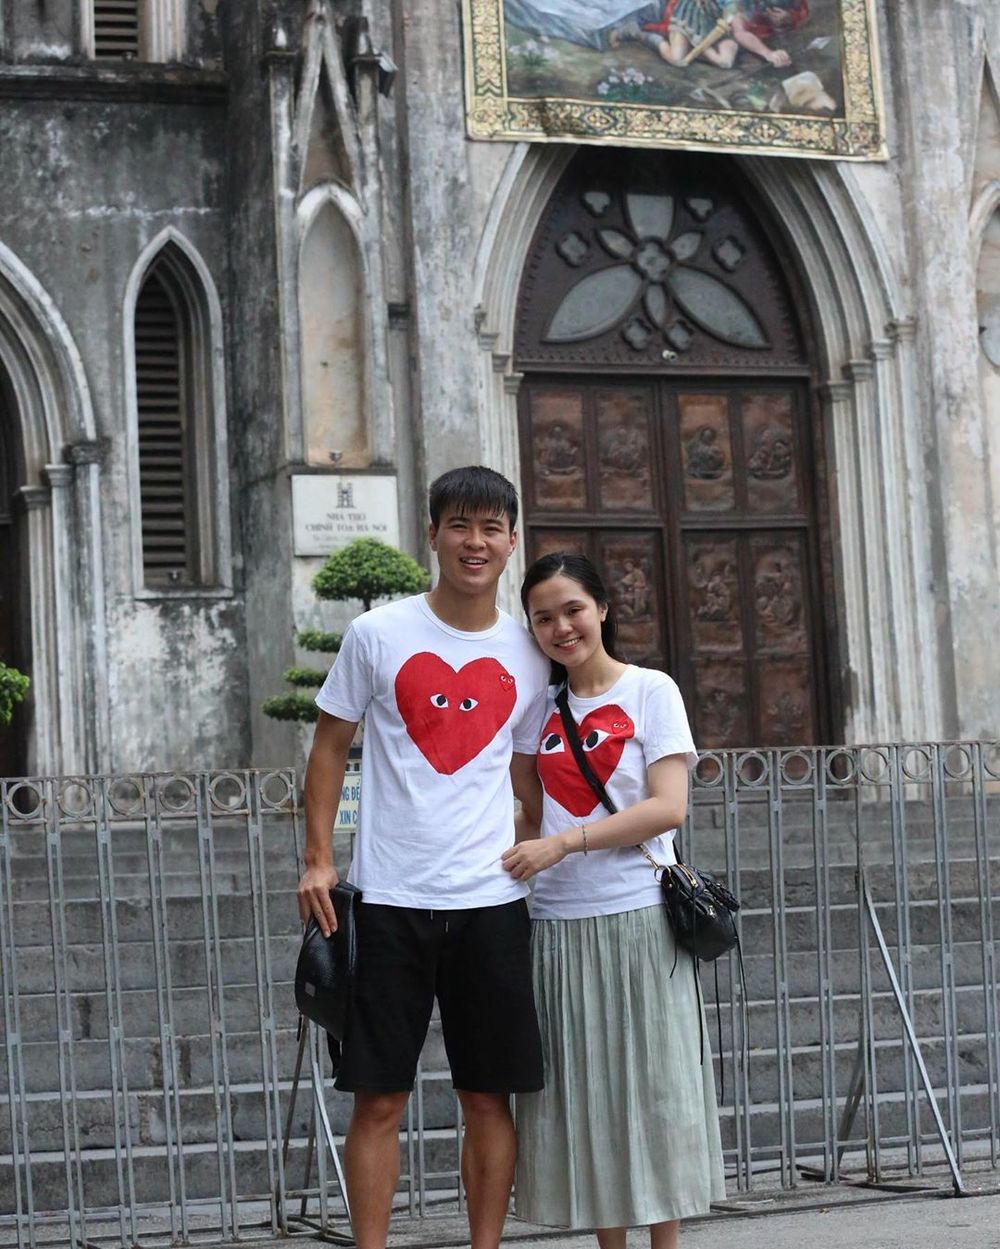  
Đỗ Duy Mạnh và bạn gái Quỳnh Anh chính là cặp đôi cầu thủ - WAGs được nhiều người ngưỡng mộ. (Ảnh: Instagram NV).